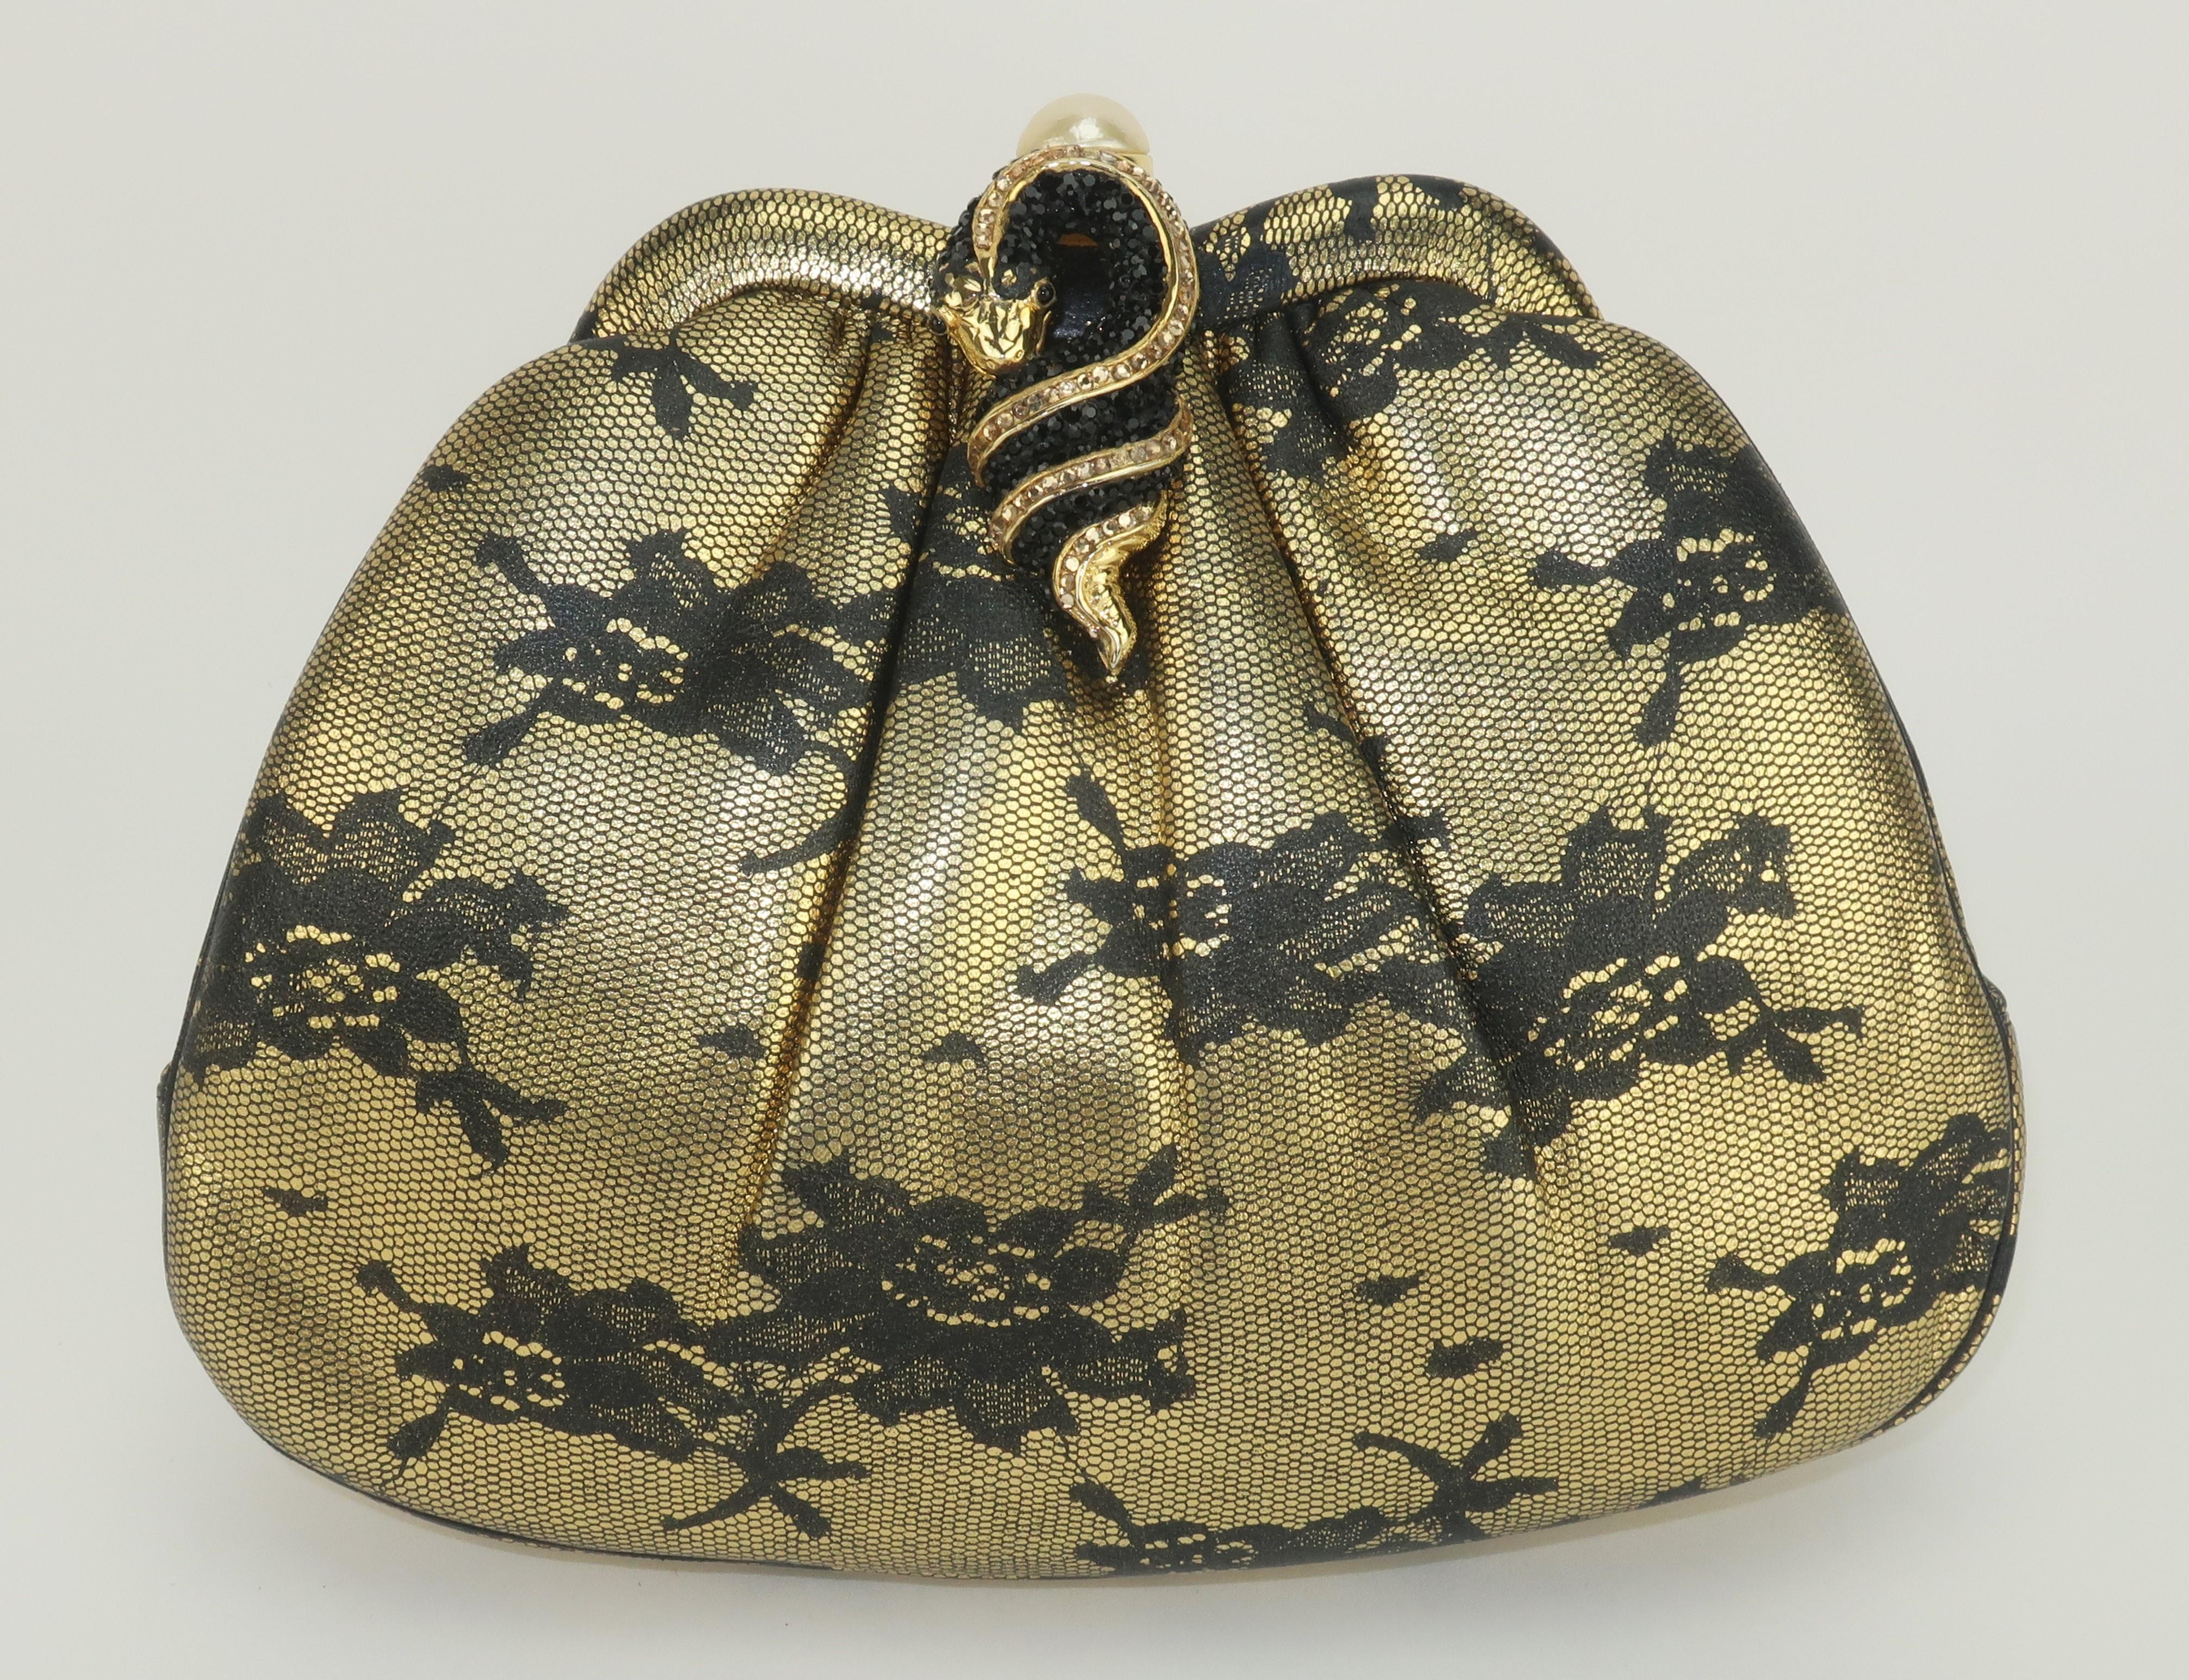 Vintage Judith Leiber Abendhandtasche in einem ungewöhnlichen schwarzen Spitze gedruckt Gold Leder mit einem Druckknopf Perle Schließung durch eine gewundene Pflasterkristall Schlange verschönert.  Der Verschluss lässt sich öffnen und gibt den Blick